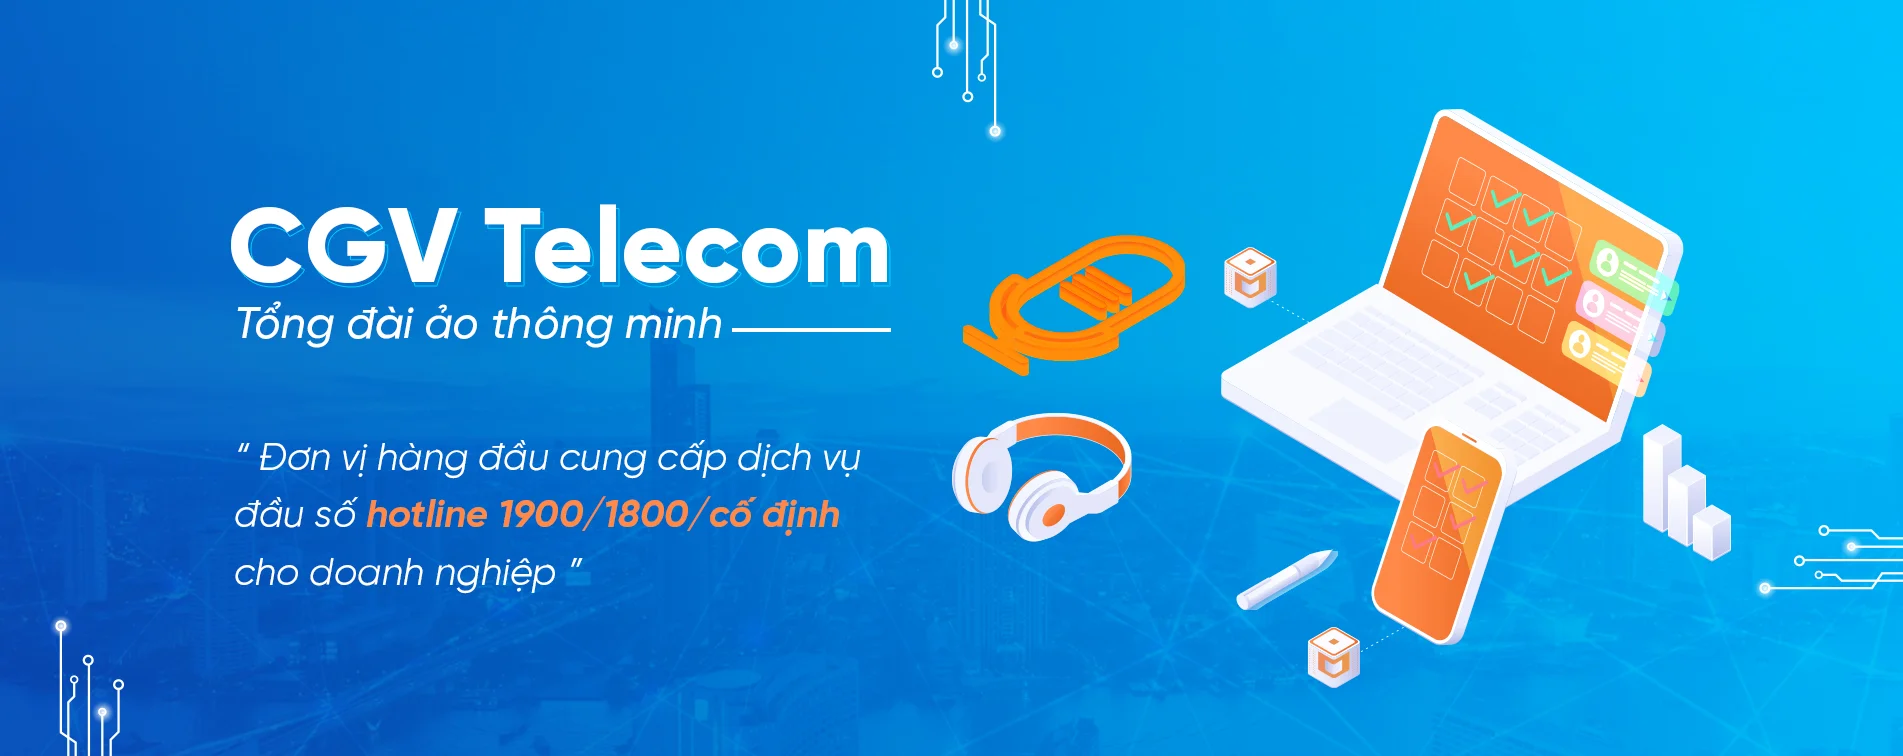 CGV Telecom: Tổng đài di động|Hotline di động|Sử dụng trên Smartphone